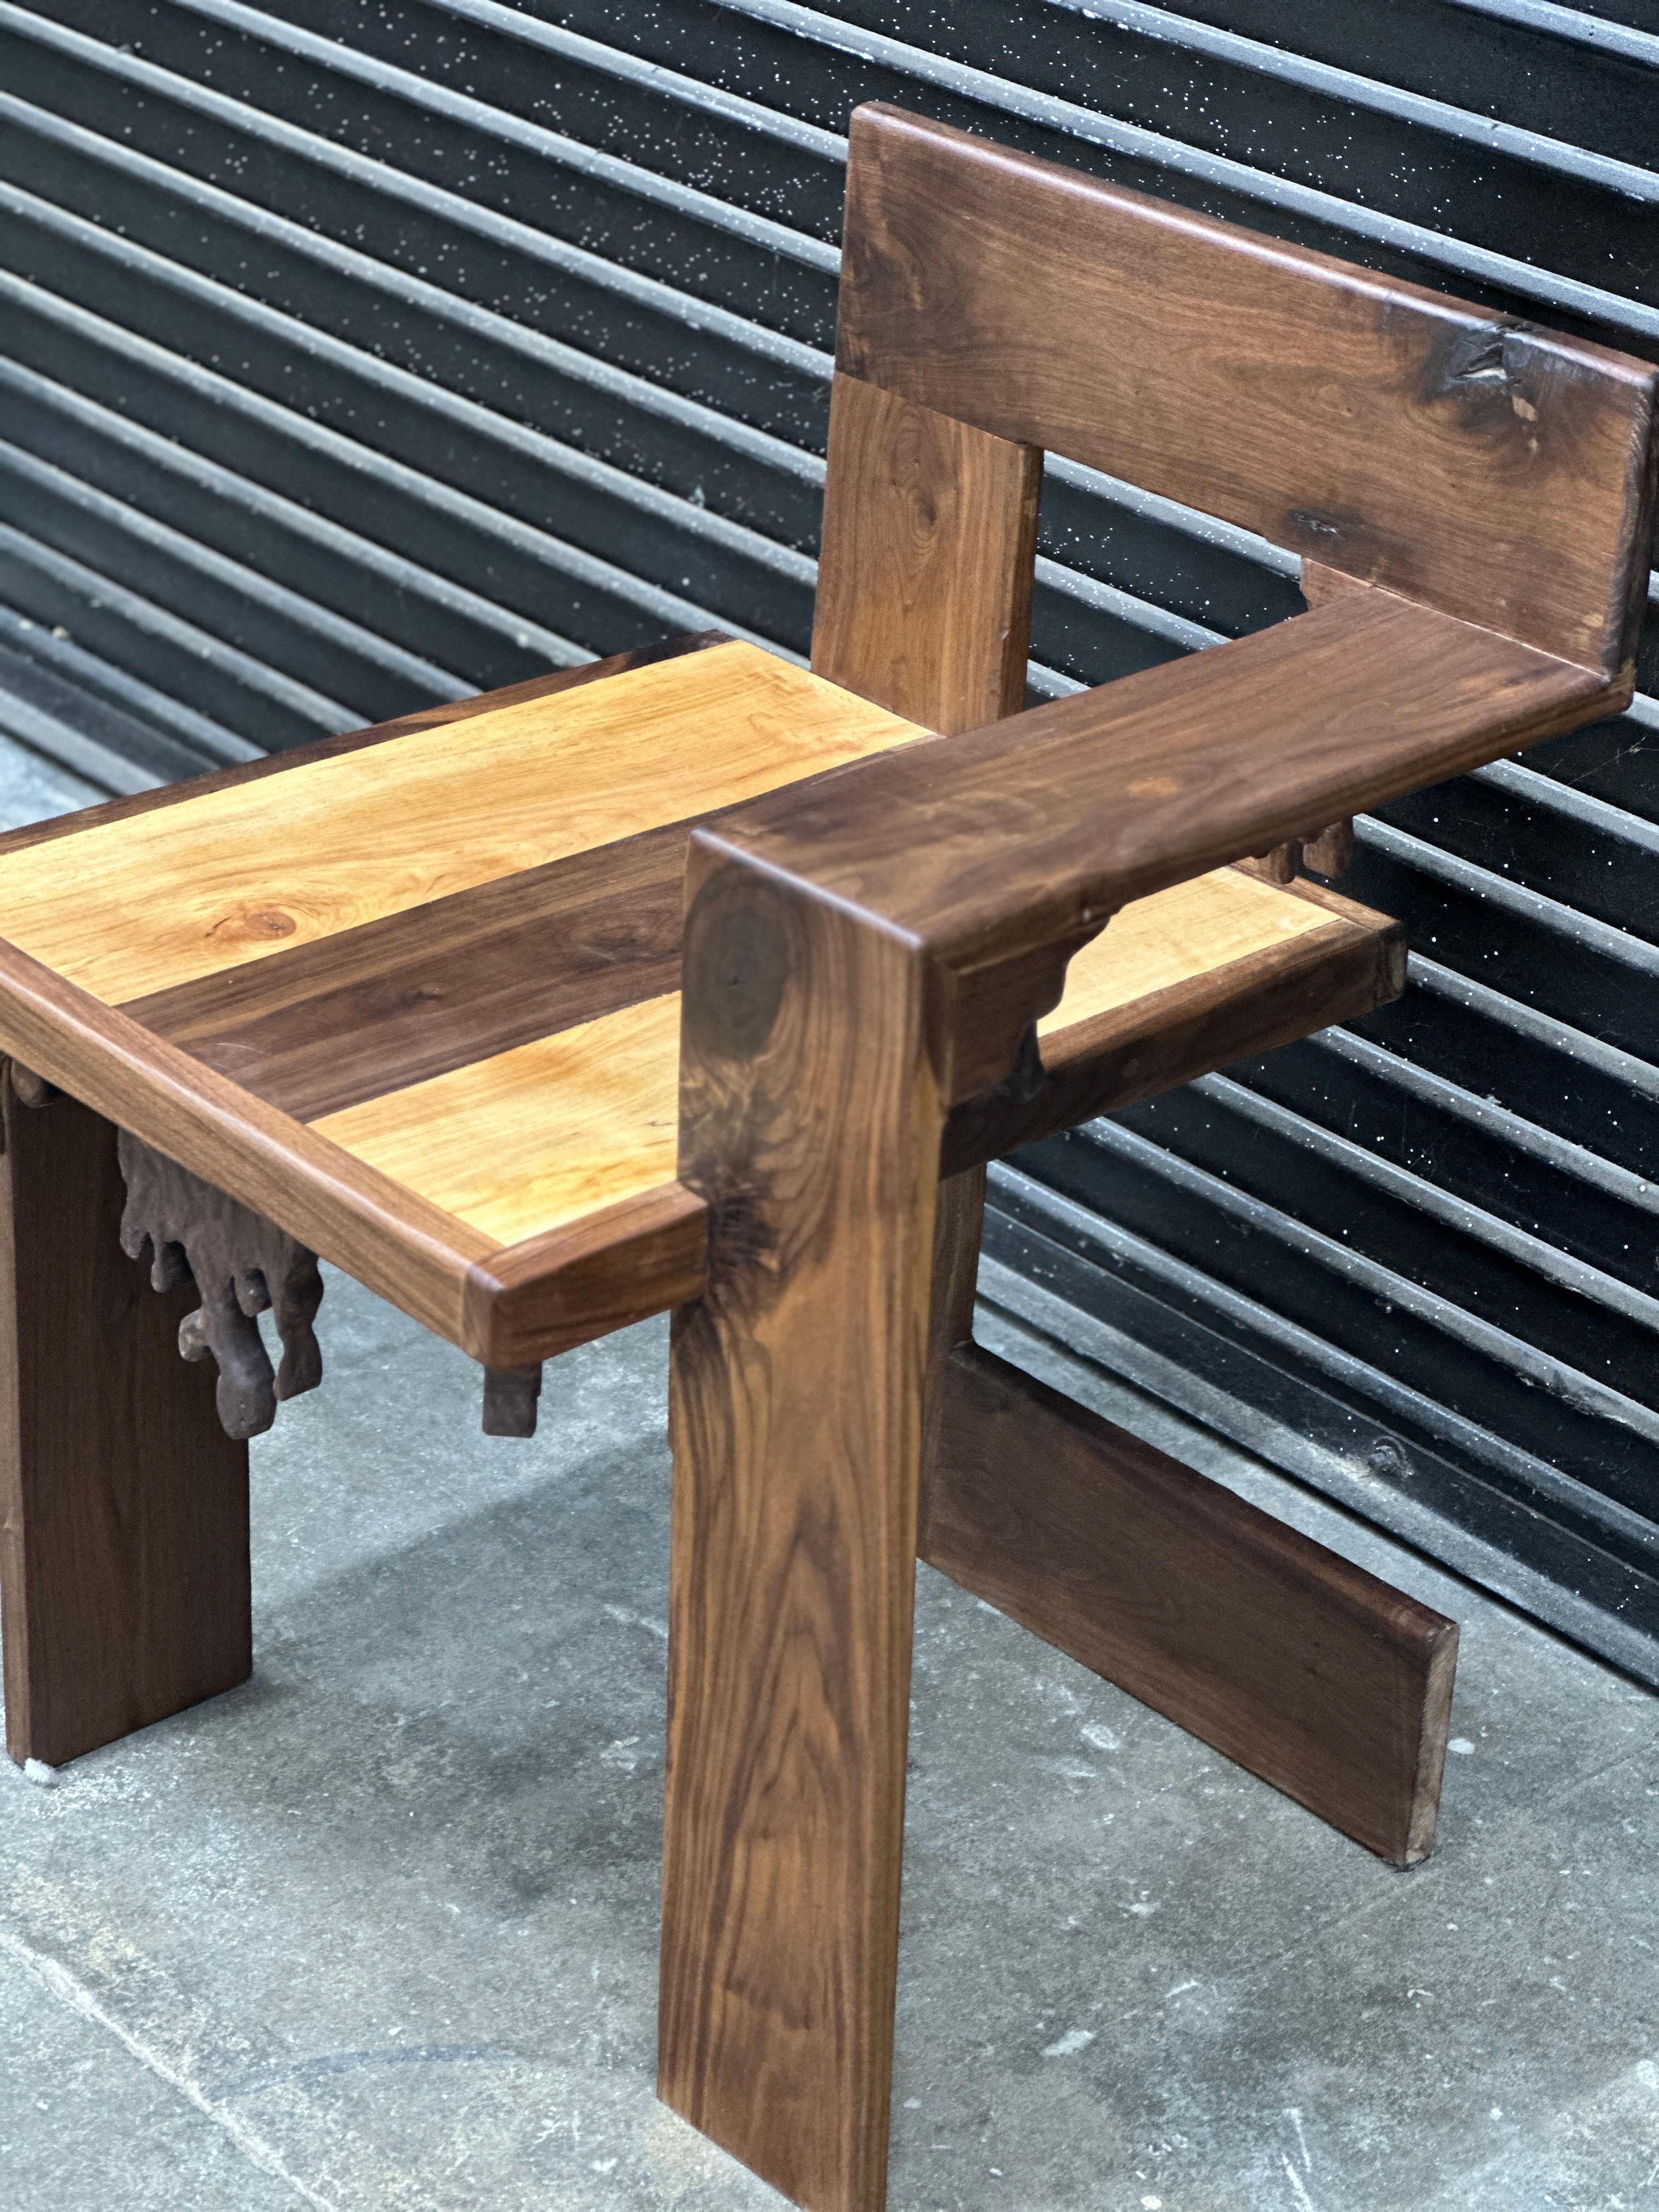 Une version moderne et artisanale de la chaise Steltman de Gerrit Rietveldc. Cette chaise est conçue avec des grains de bois et des finitions variés. La chaise est extrêmement robuste et bien fabriquée. Le design 